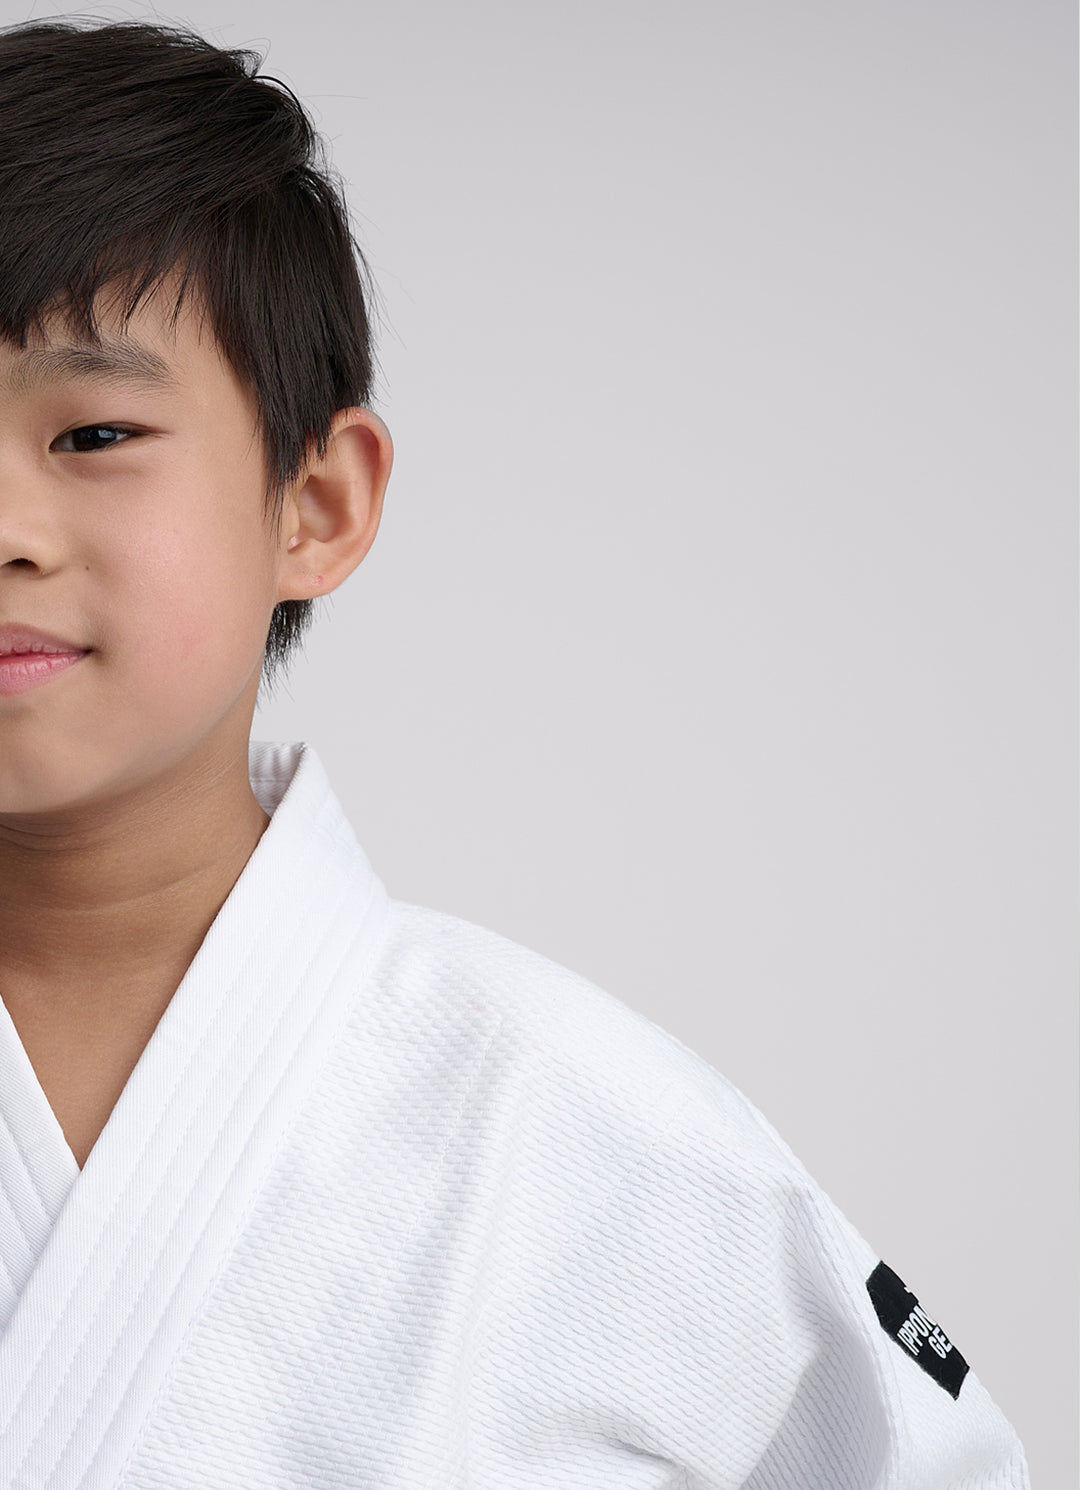 IPPON GEAR Kinder Judoanzug Future 2